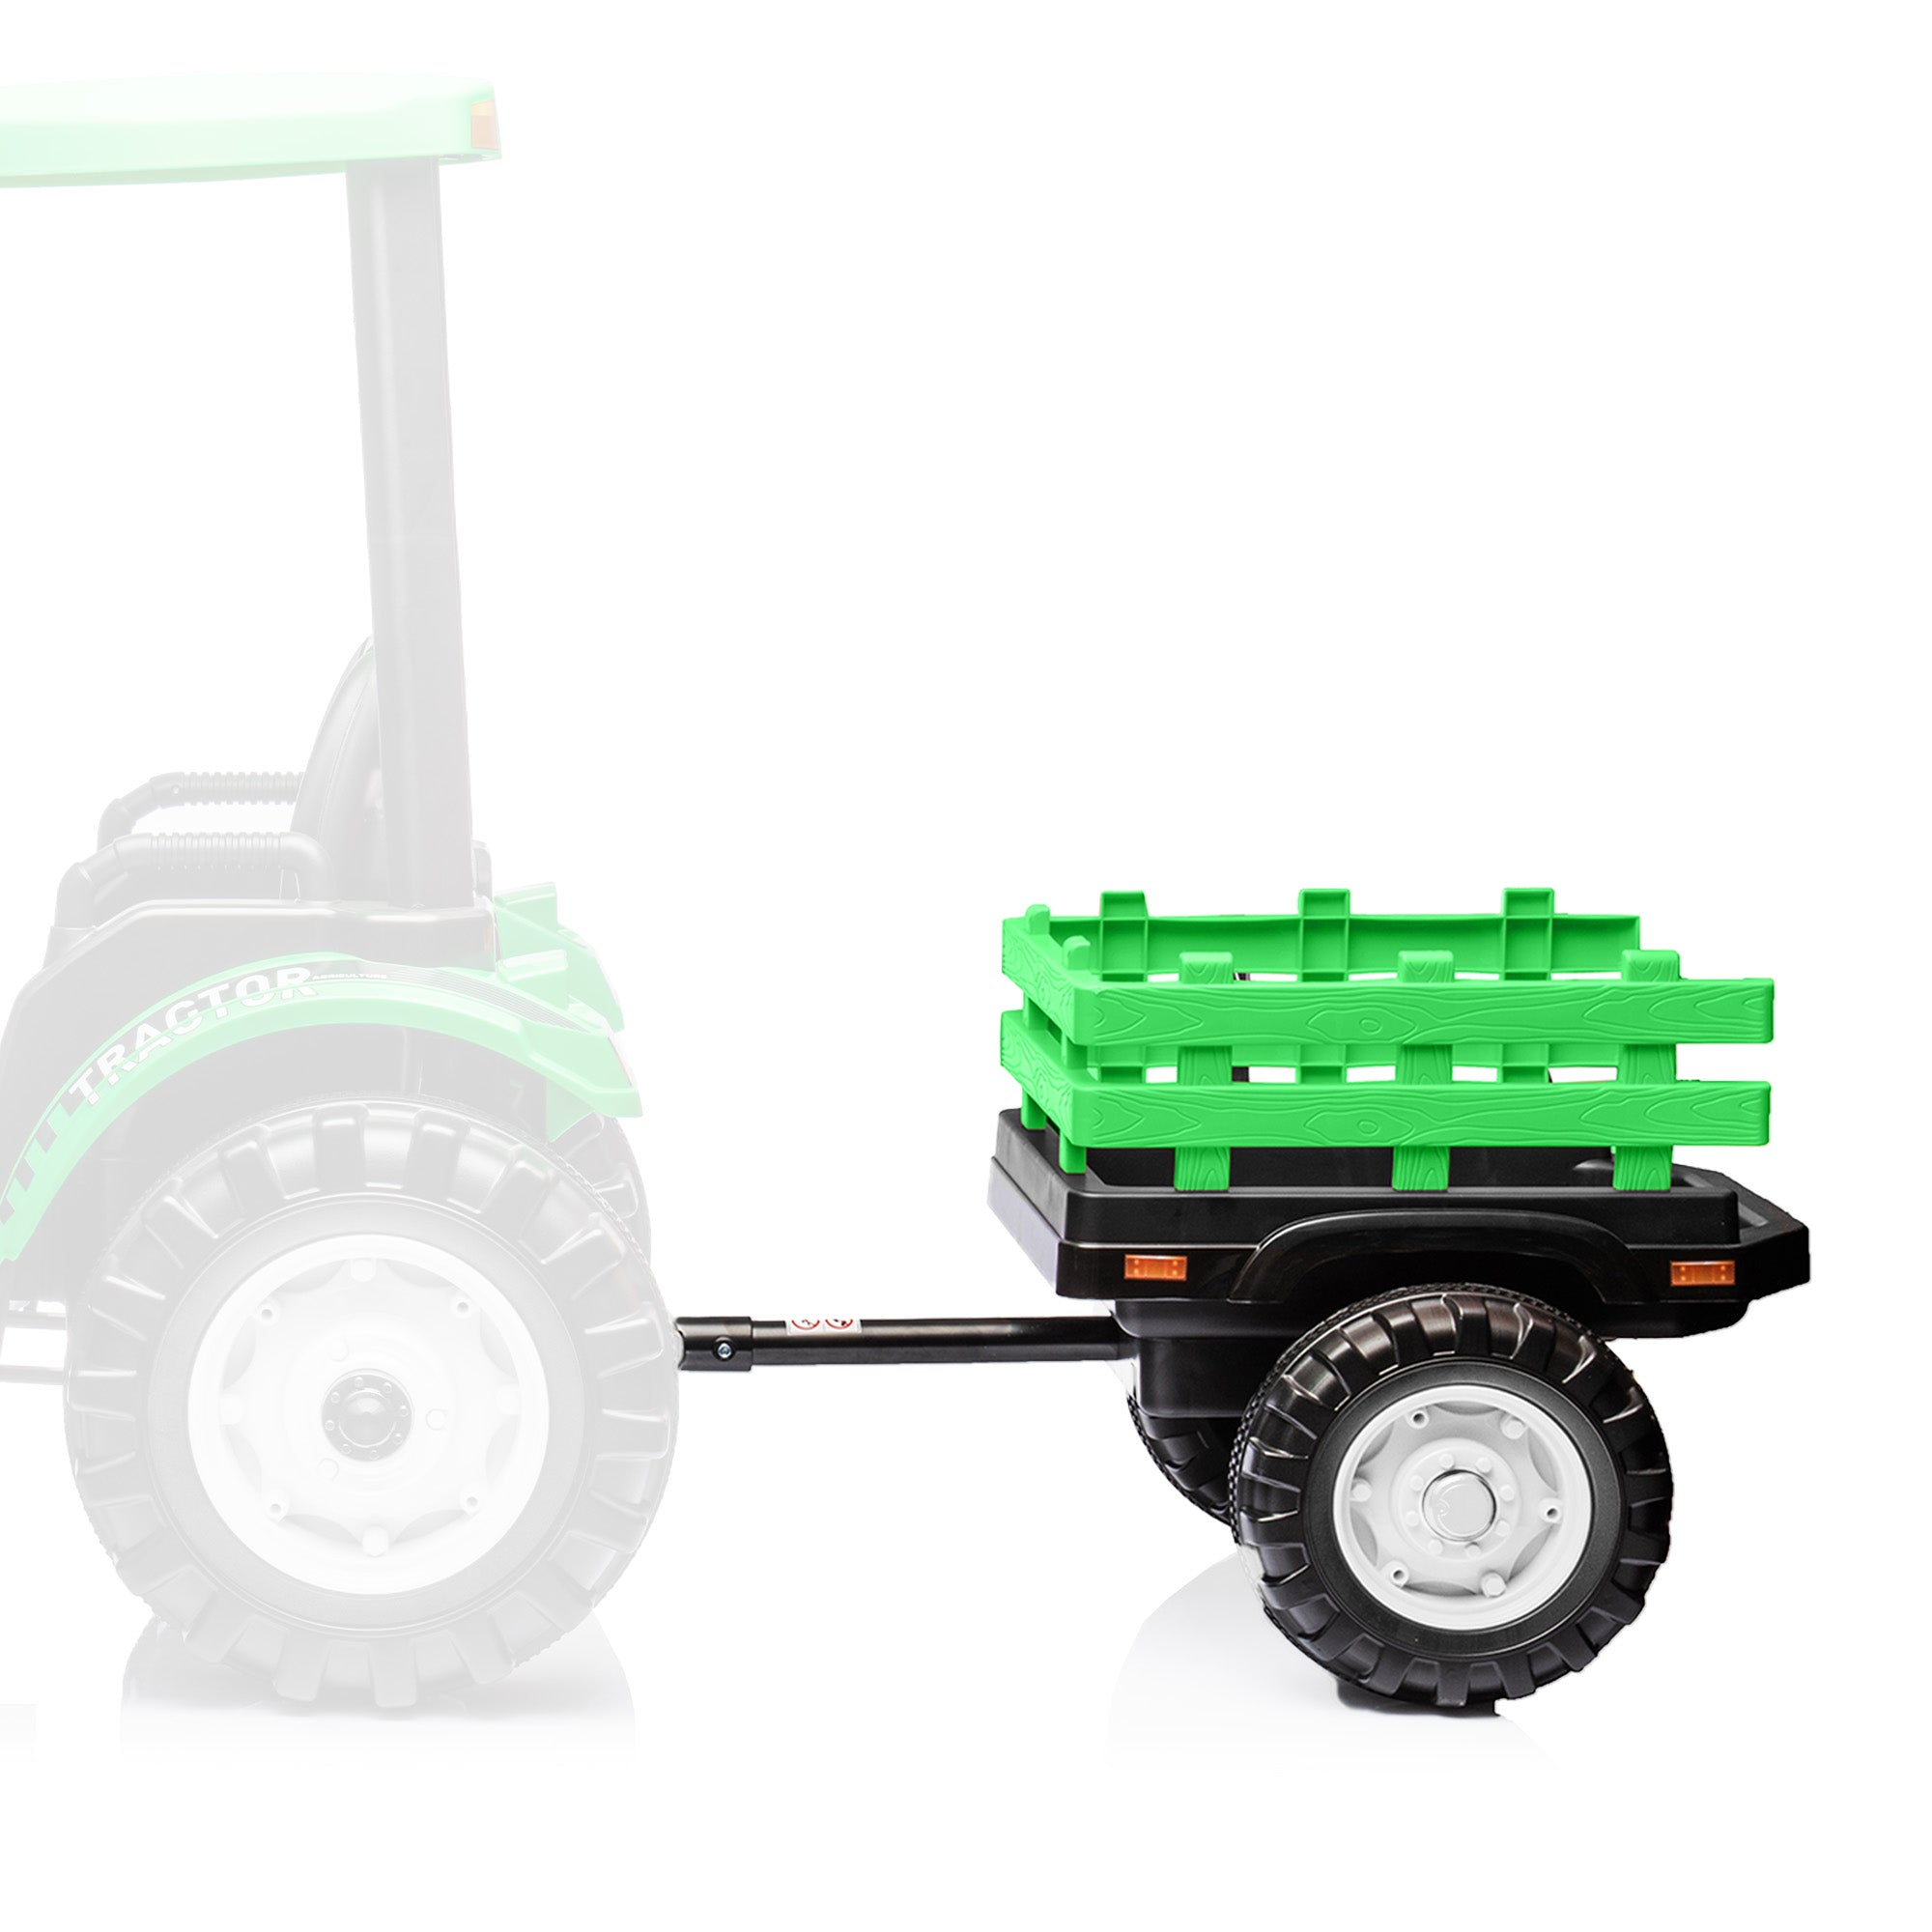 24v tractor Front loader & Trailer